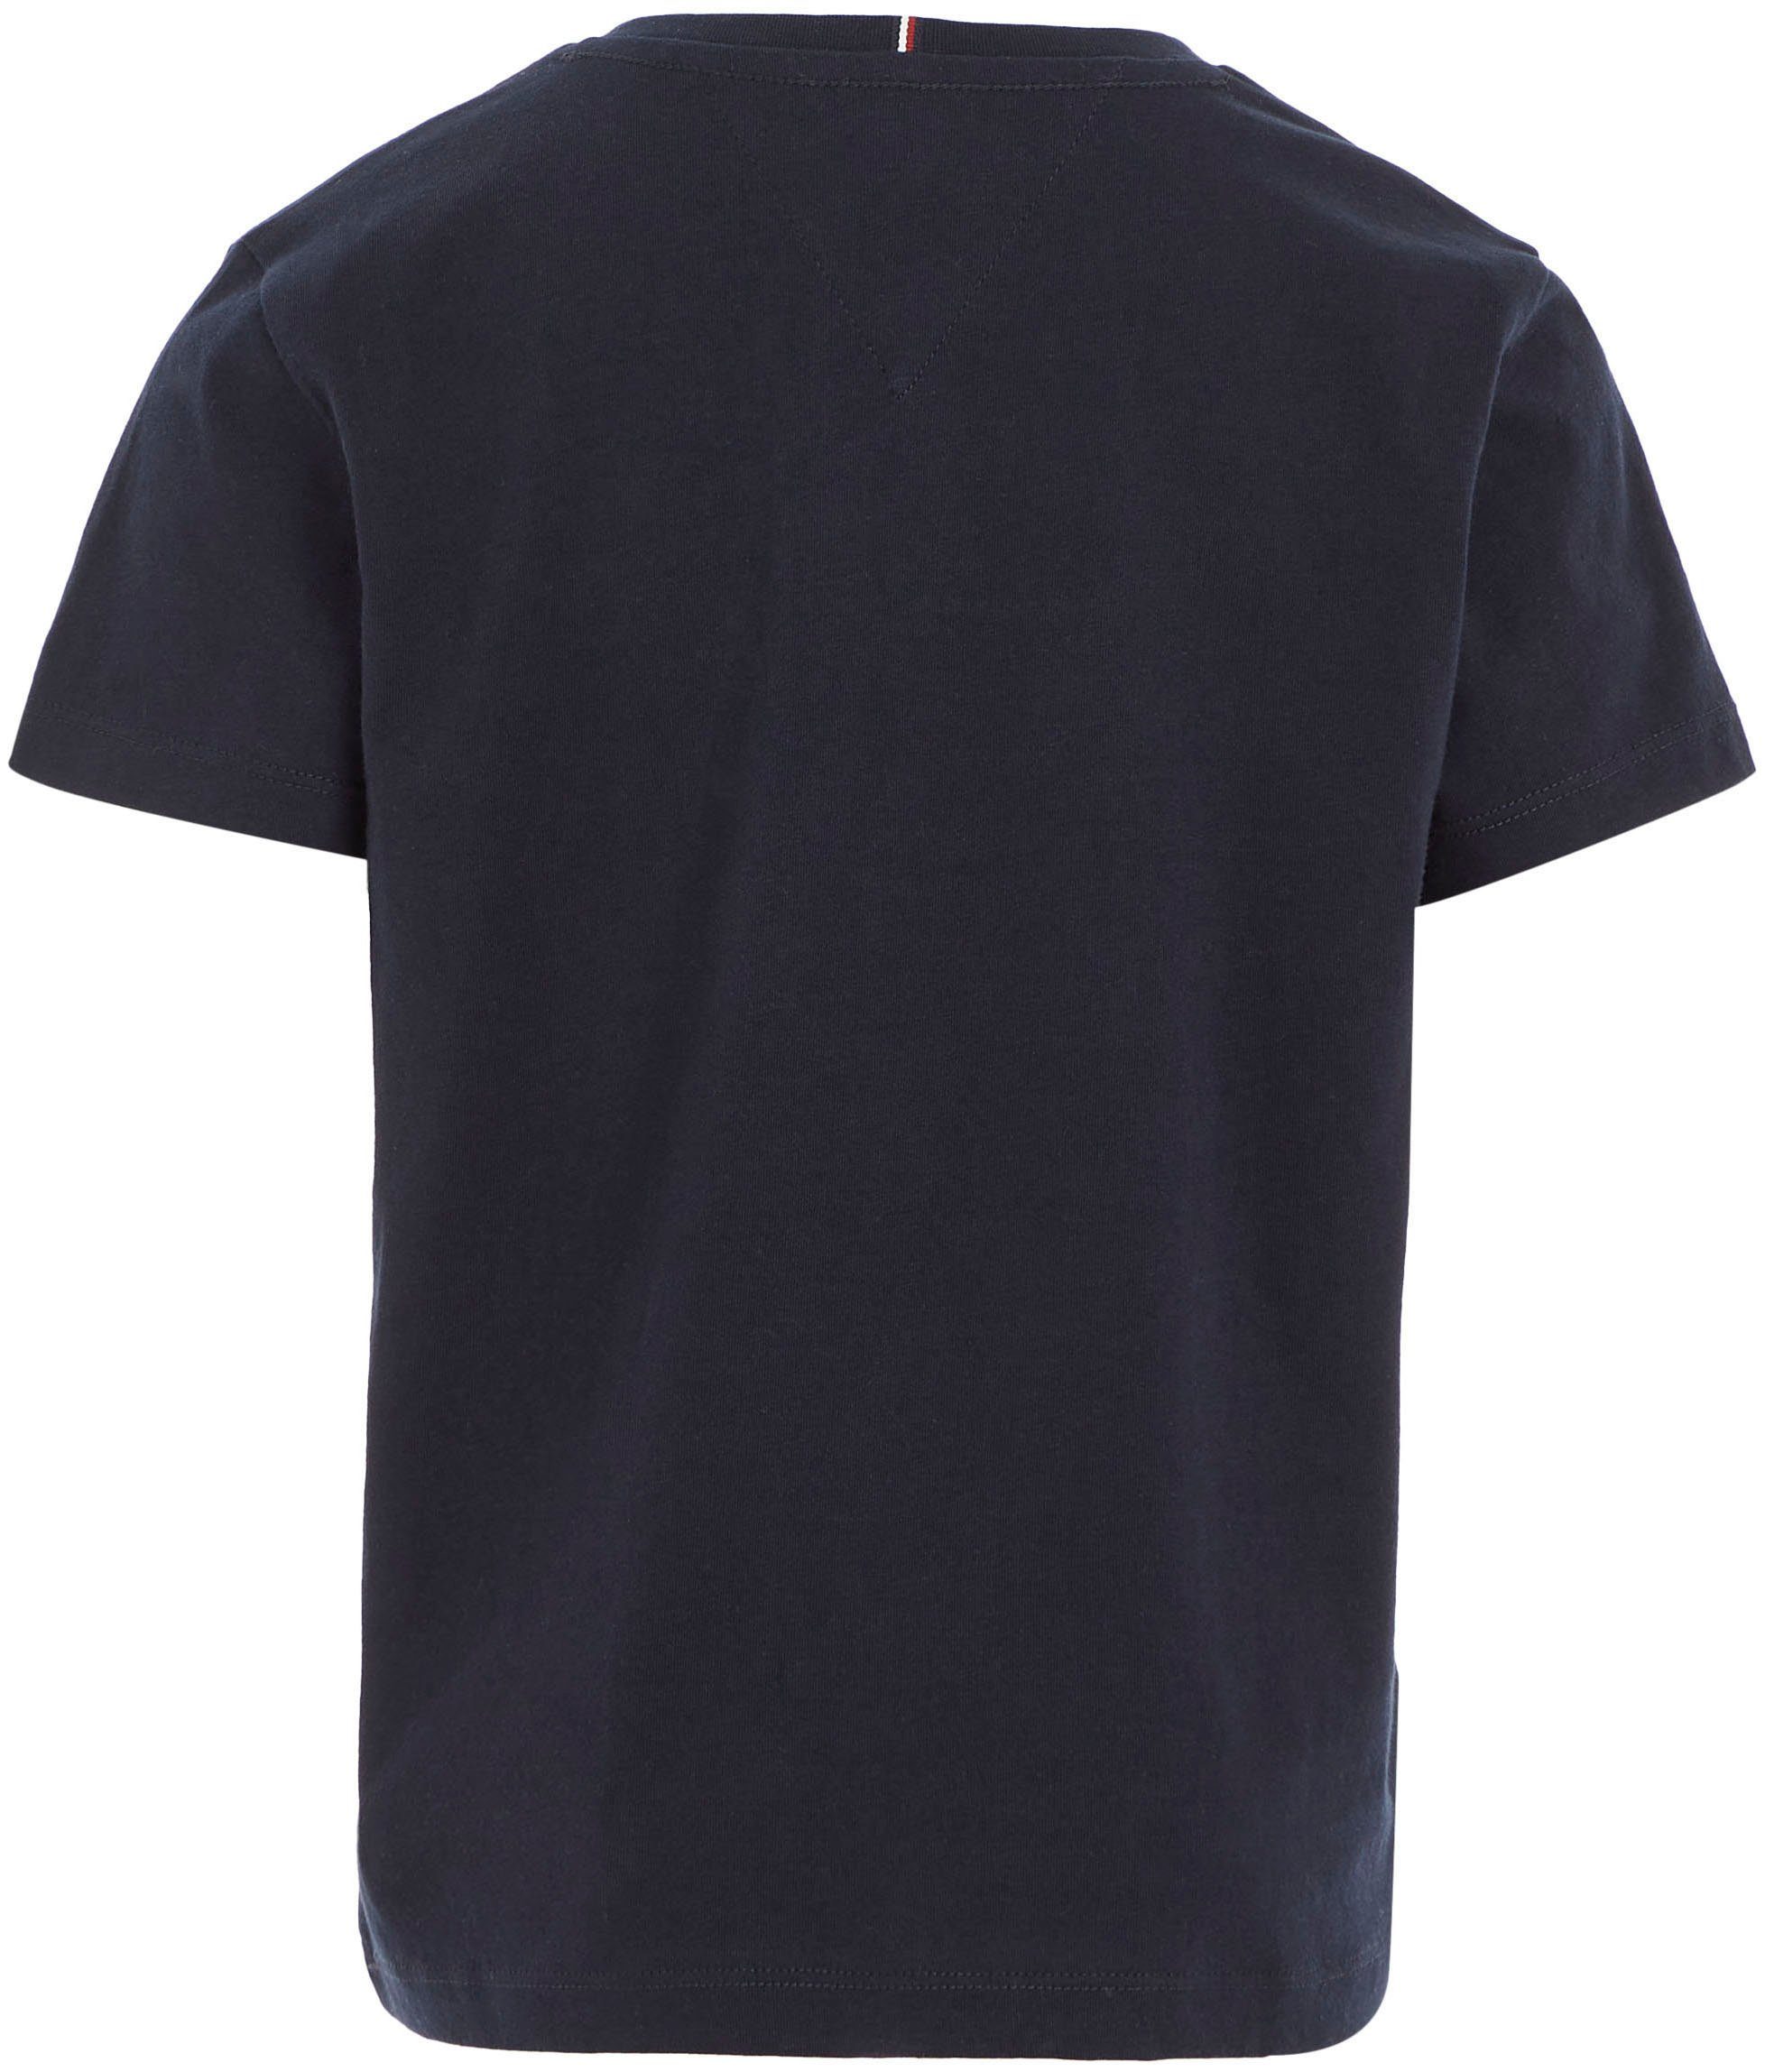 Hilfiger der S/S modischem dunkelblau MONOTYPE Hilfiger-Logoschriftzug T-Shirt Brust Tommy auf TEE mit